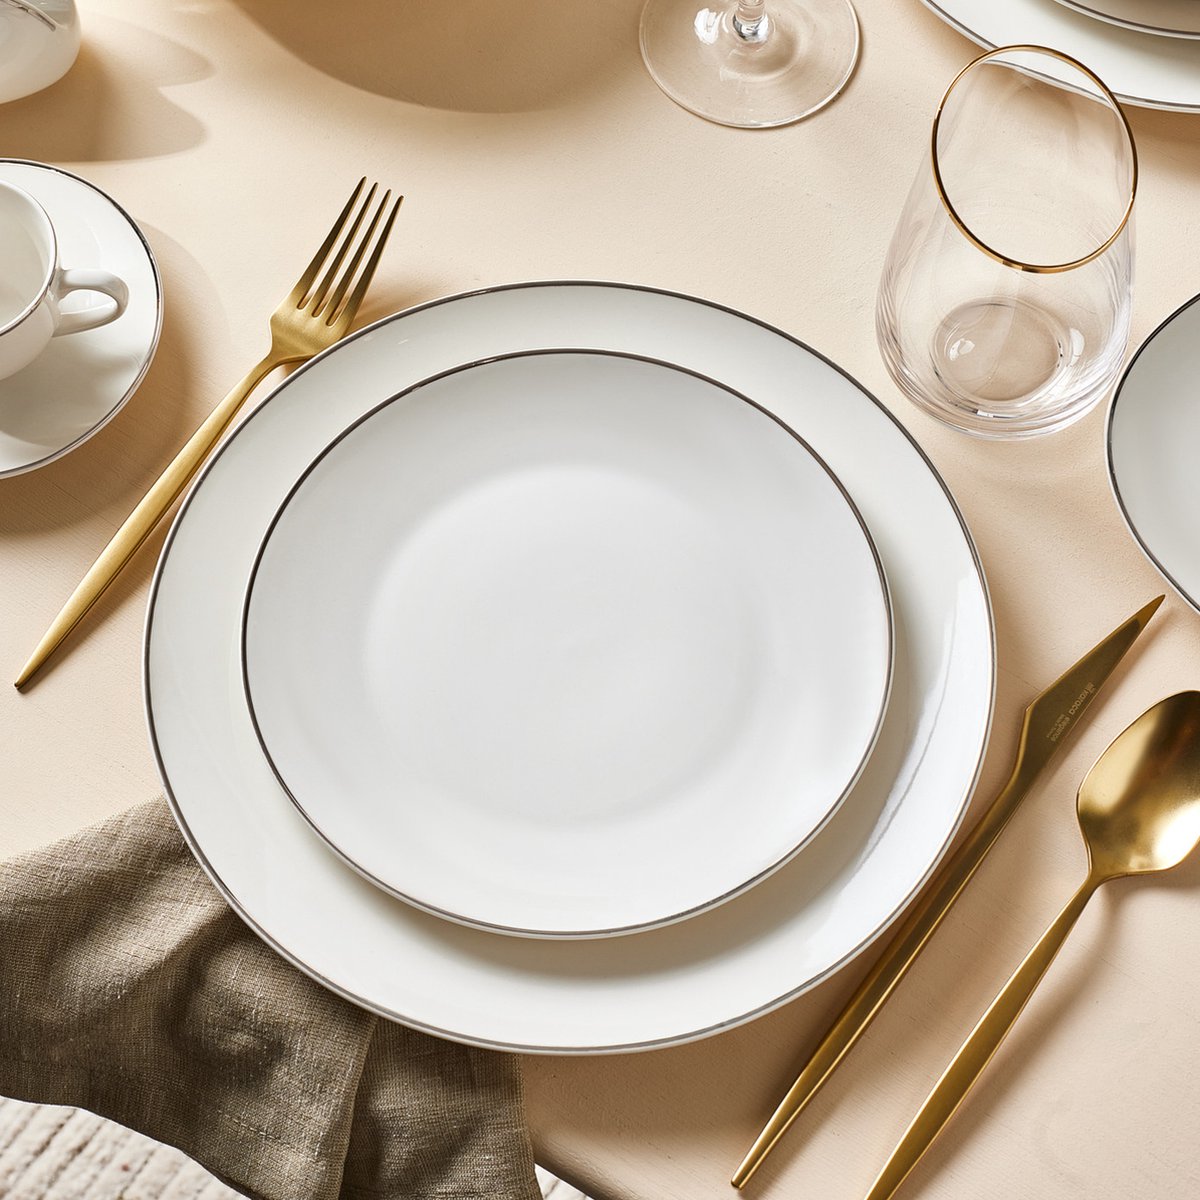 Essuie-vaisselle professionnel hébergement foyer blanc 100% Coton  restaurant restauration serveur hôtel, THST13